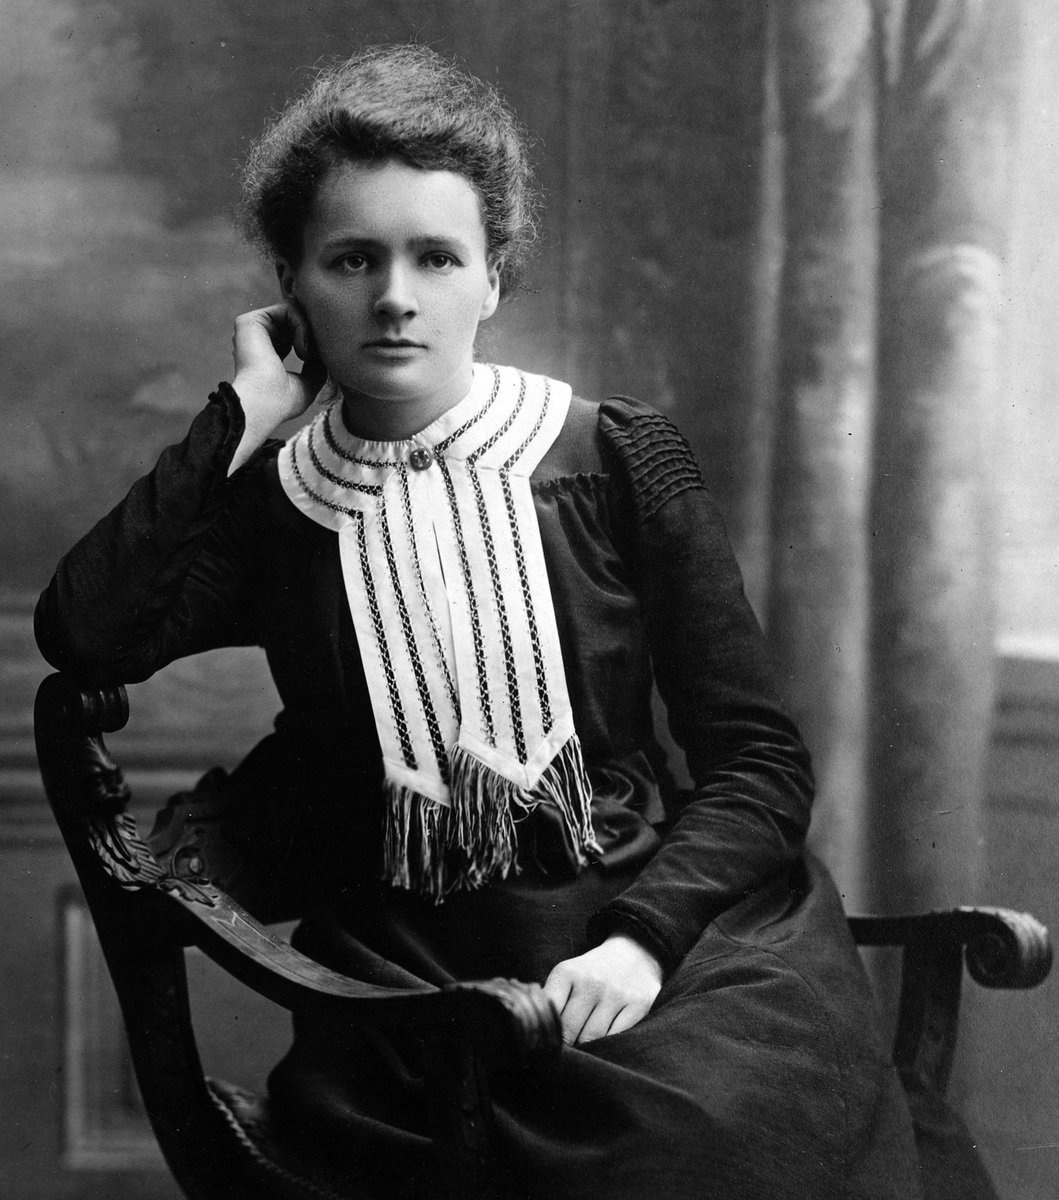 'La vida no merece que uno se preocupe tanto'. Marie Curie #Fuedicho